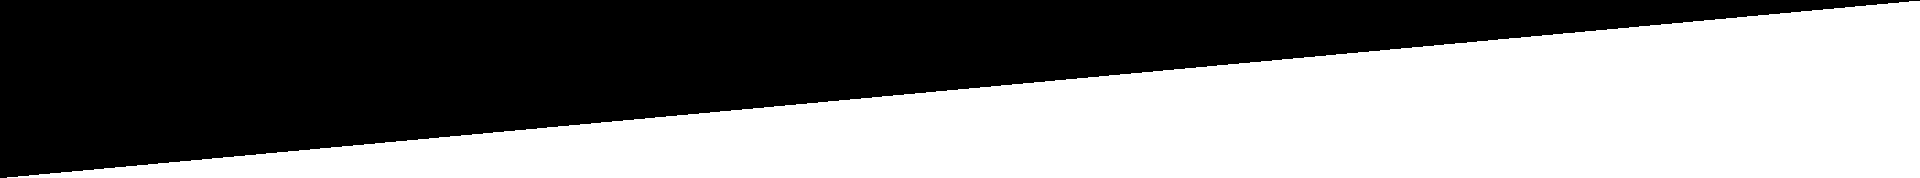 immagine in bianco e nero di una linea diagonale su sfondo bianco.